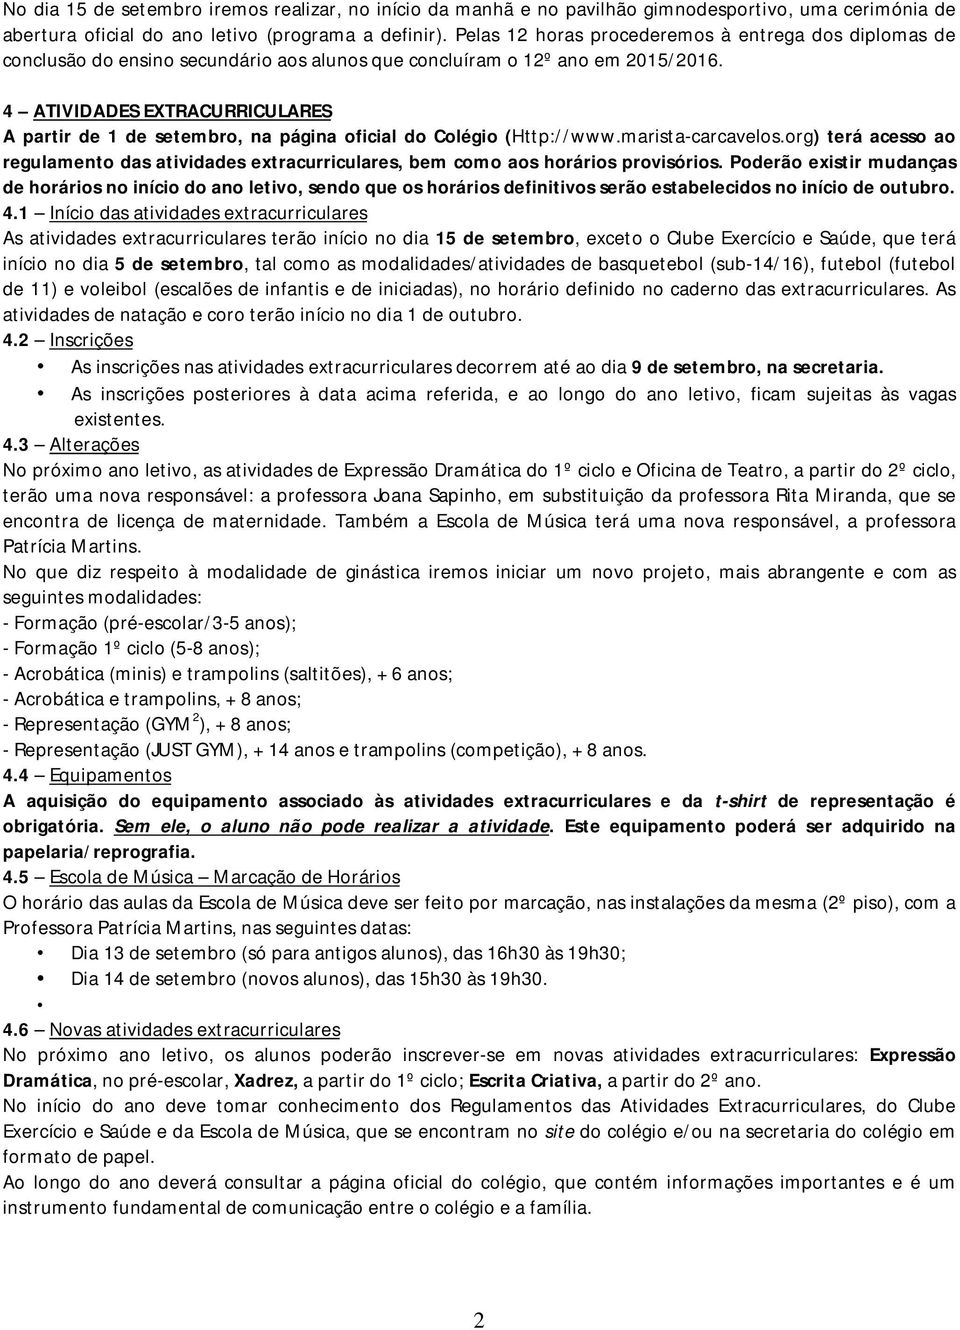 4 ATIVIDADES EXTRACURRICULARES A partir de 1 de setembro, na página oficial do Colégio (Http://www.marista-carcavelos.